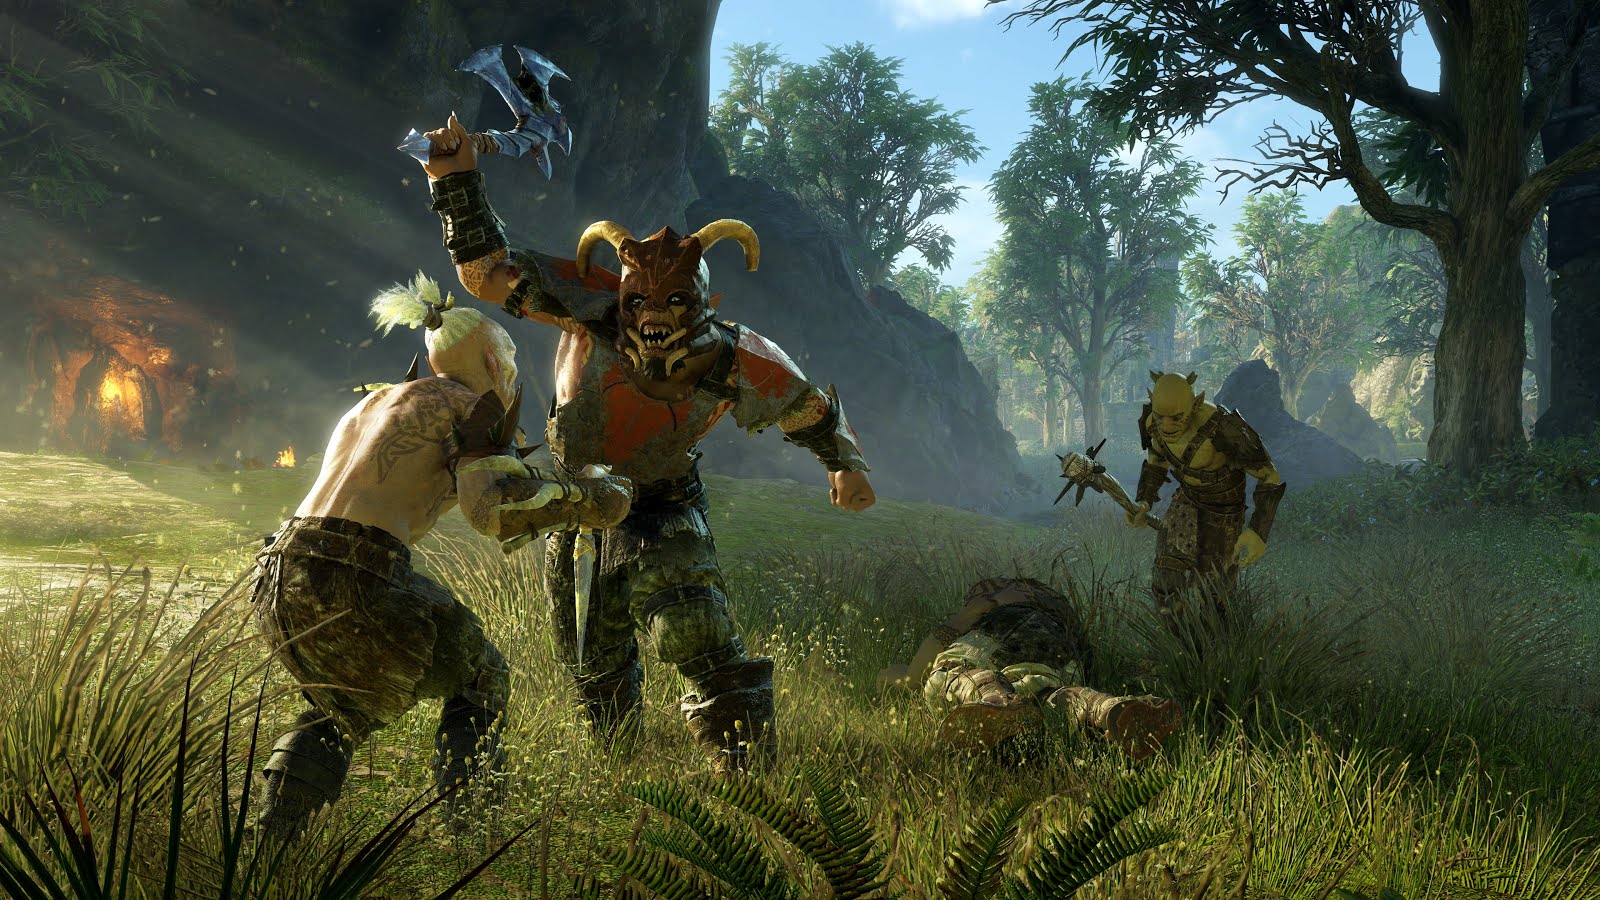 Jogo Terra Media: Sombras Da Guerra - Xbox One